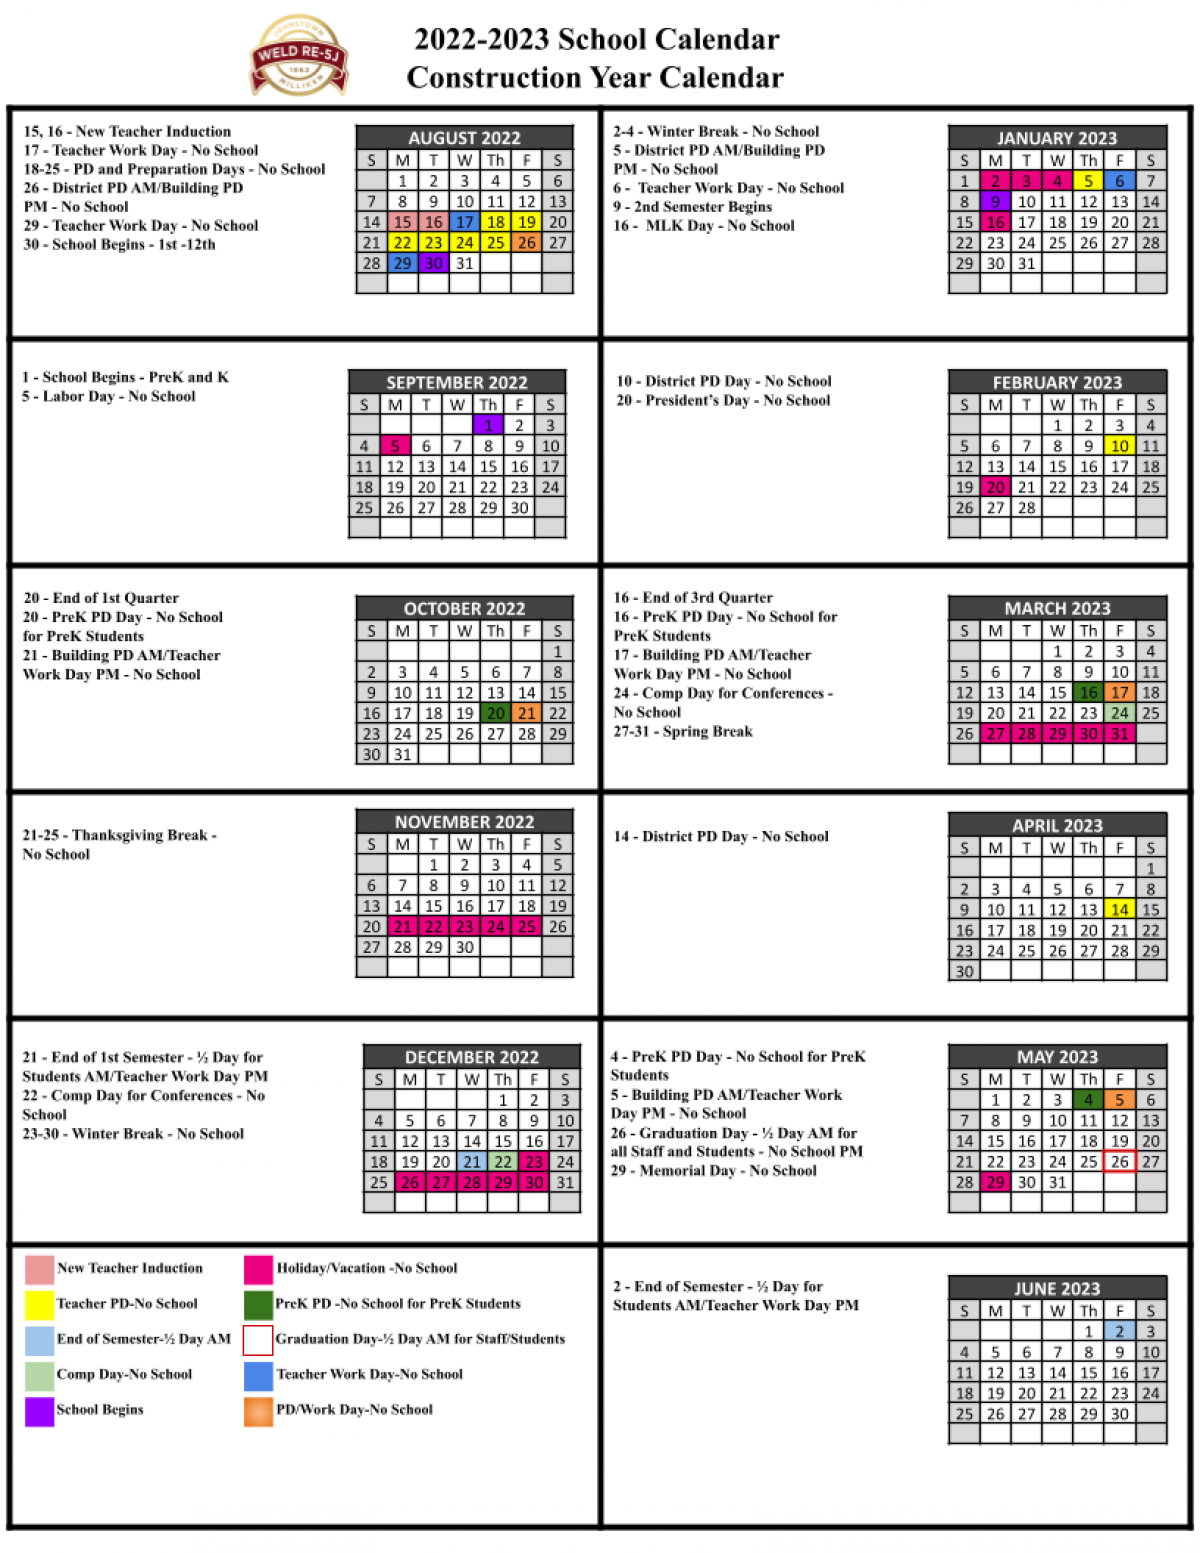 2022-2023 District Calendar | Weld County RE-5J School District ...